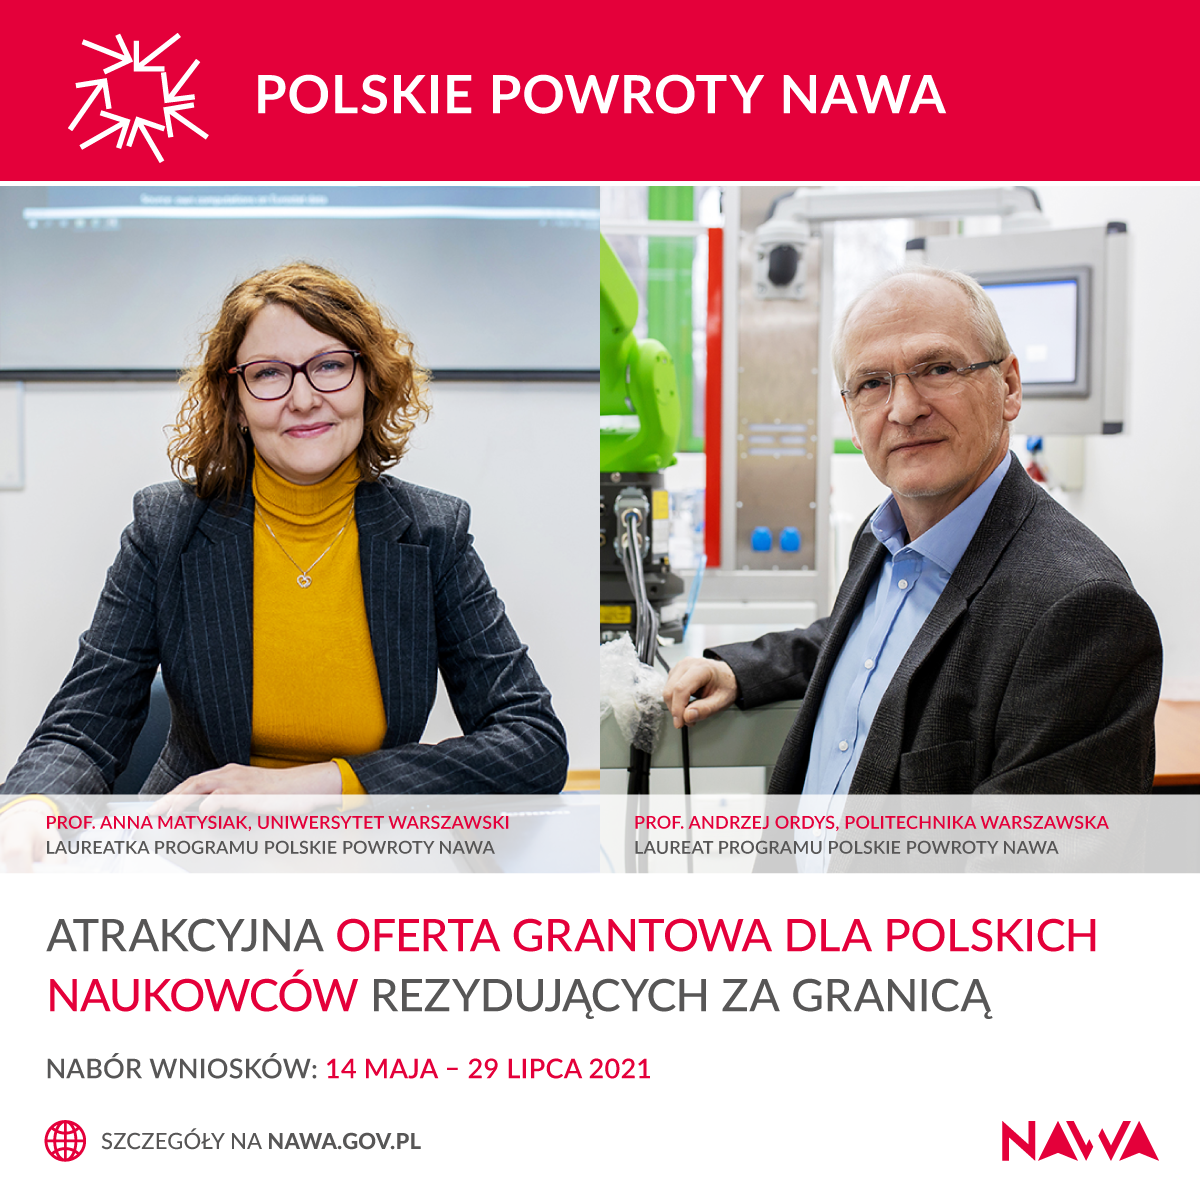 polskiepowroty2021-nabor-pl.png